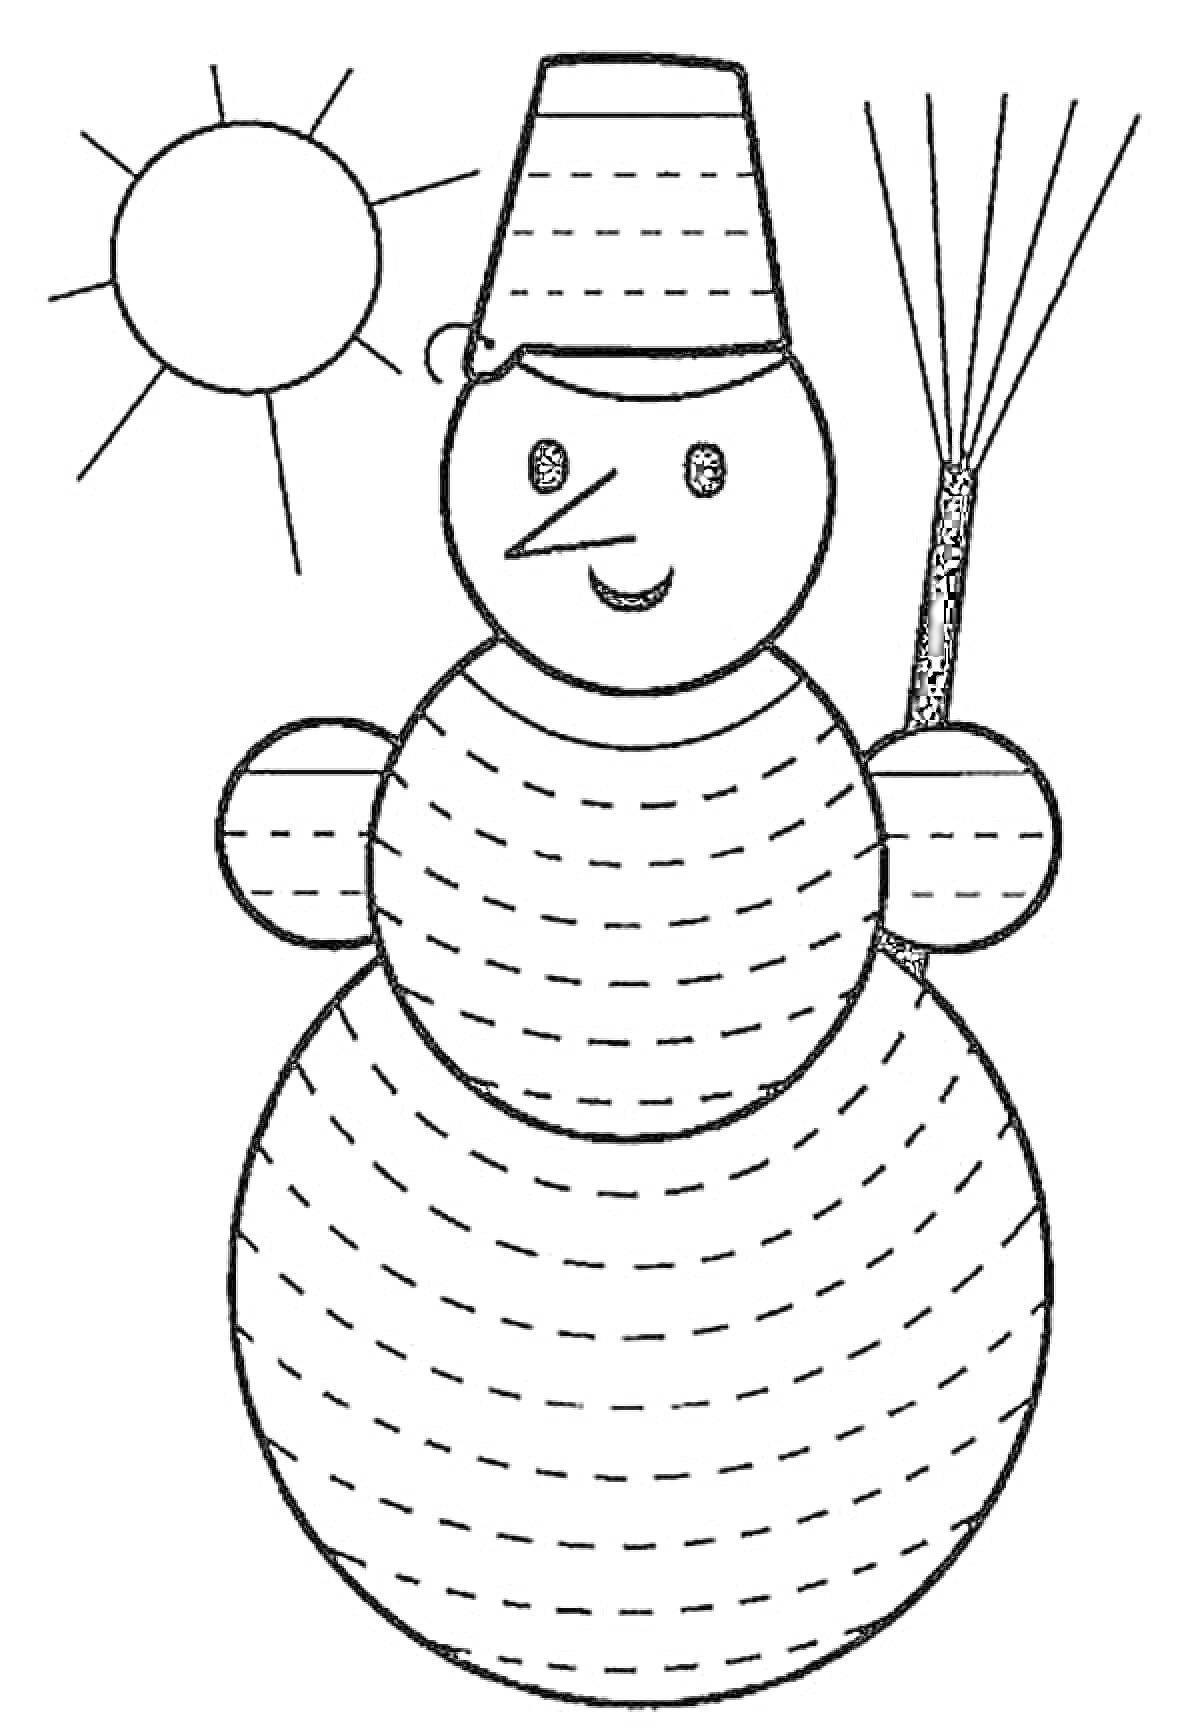 Раскраска Снеговик с ведром на голове, метла и солнце